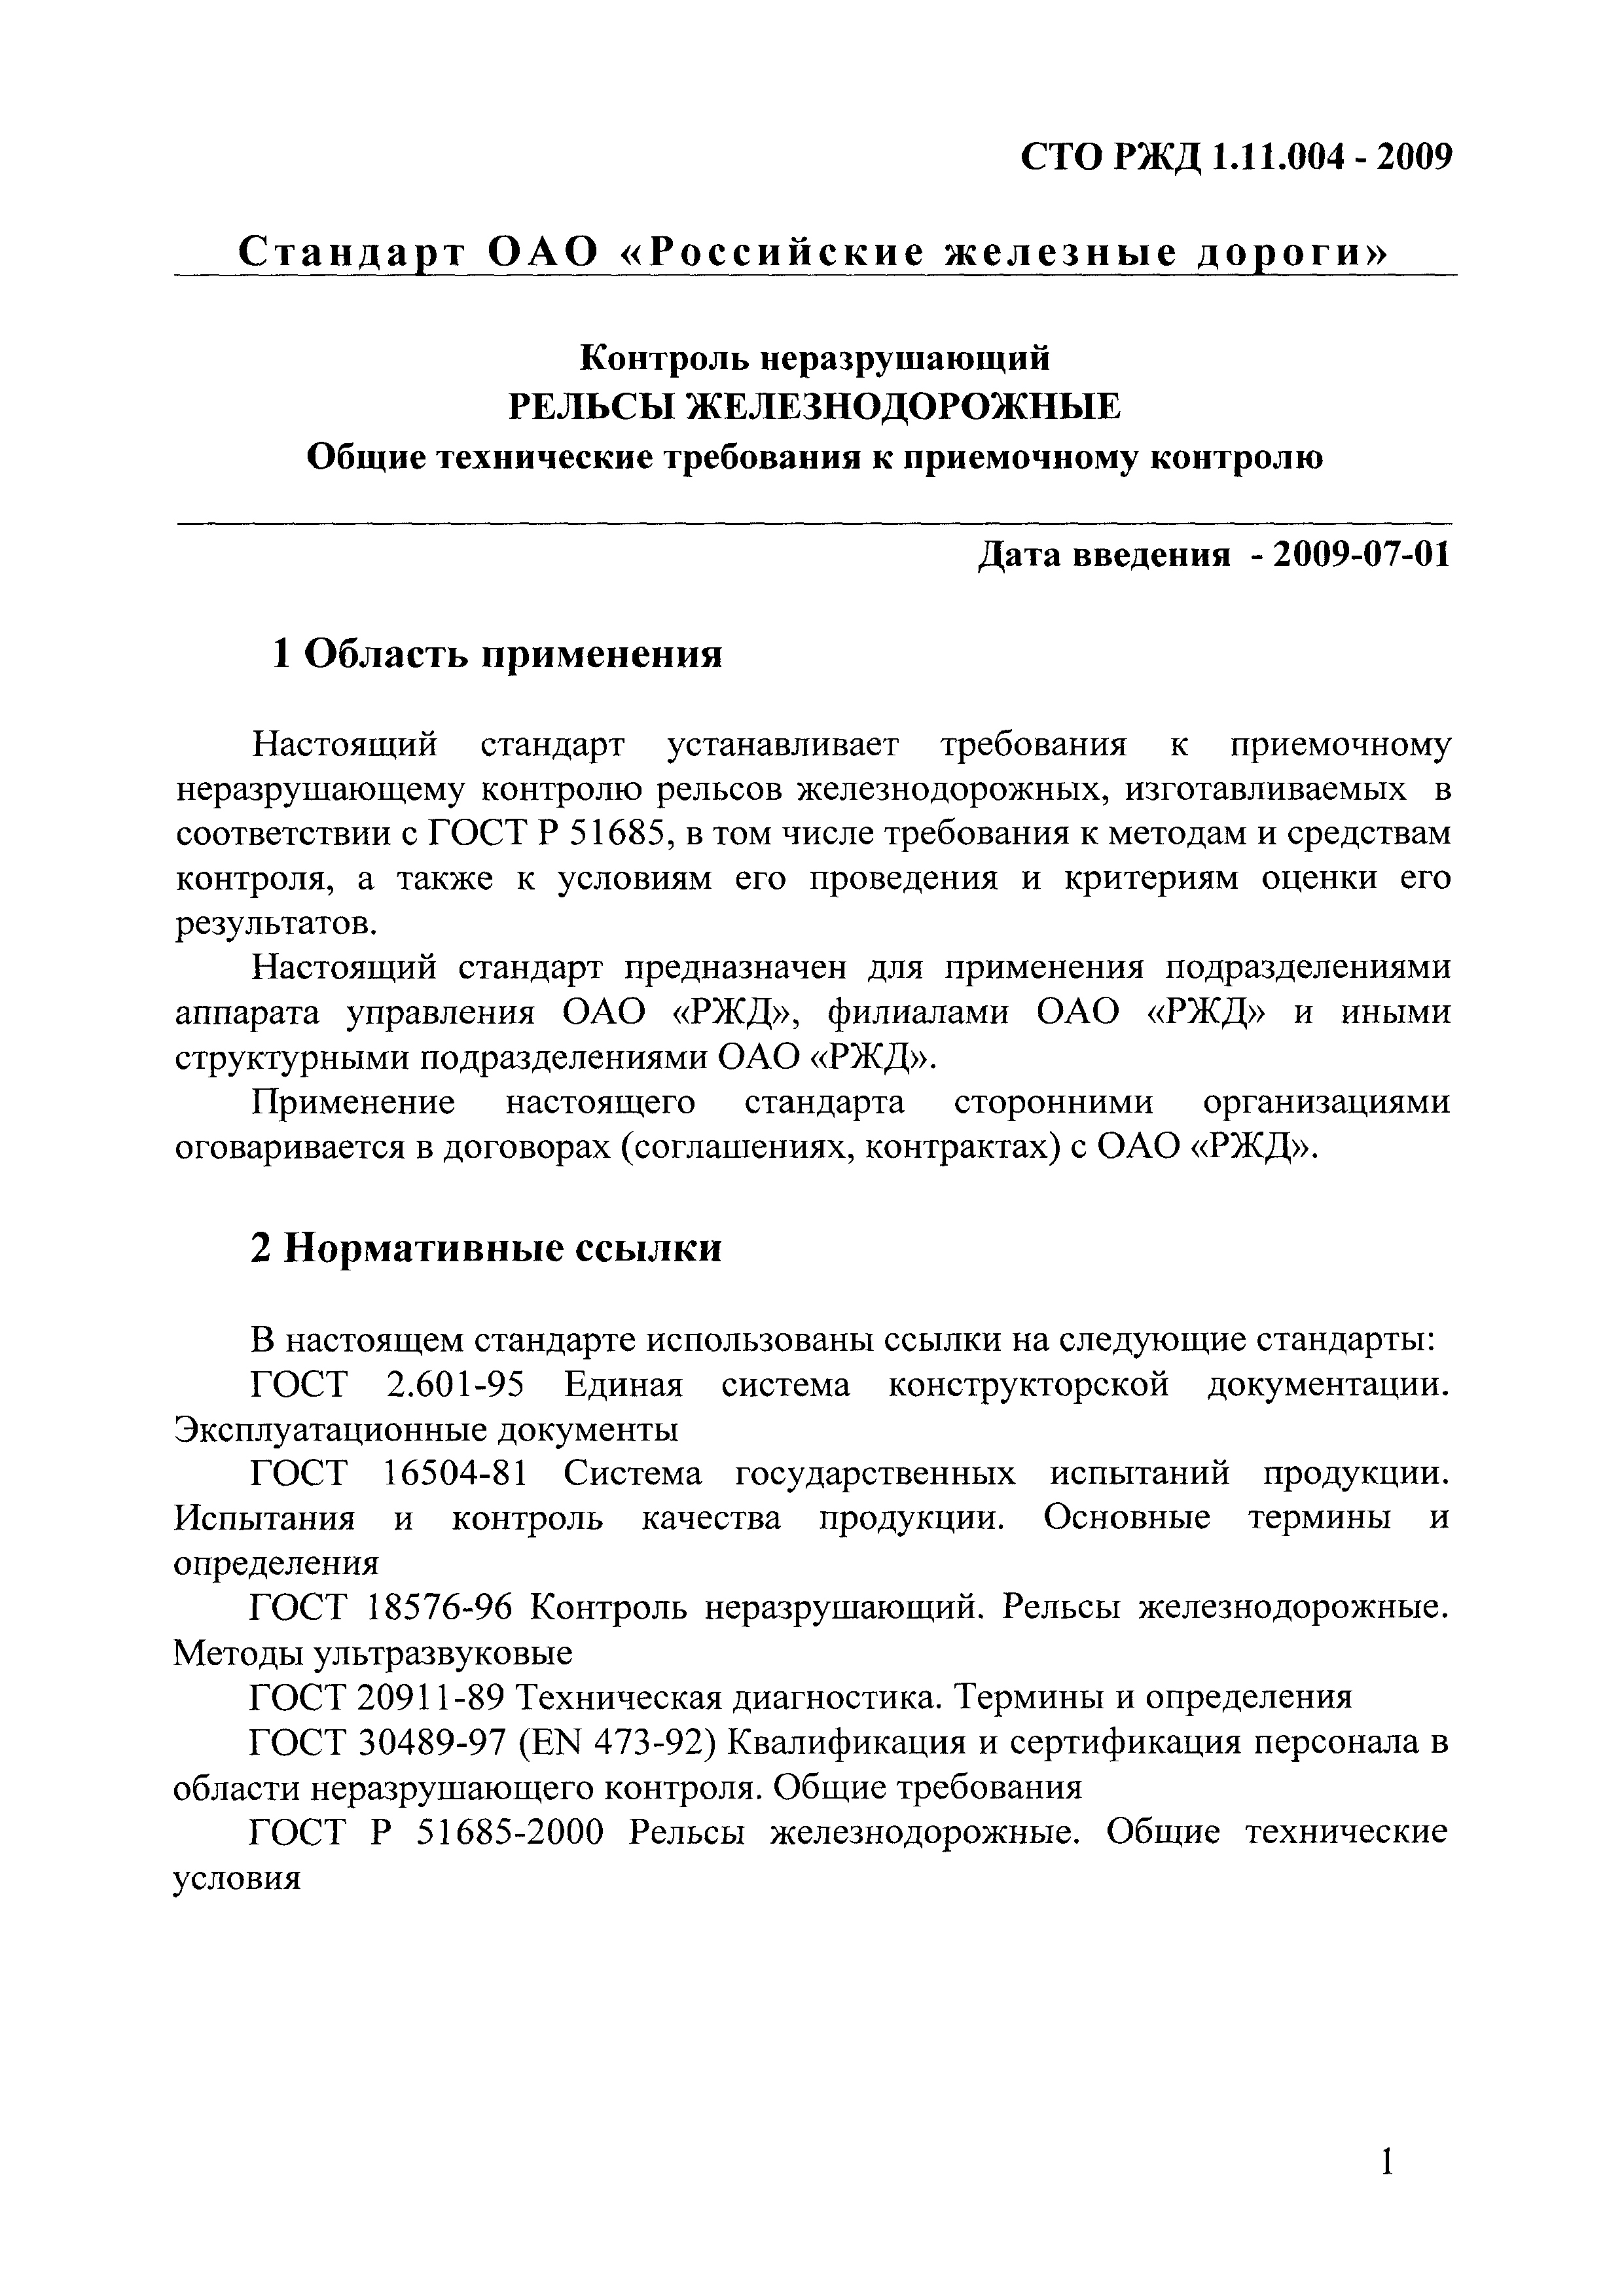 СТО РЖД 1.11.004-2009